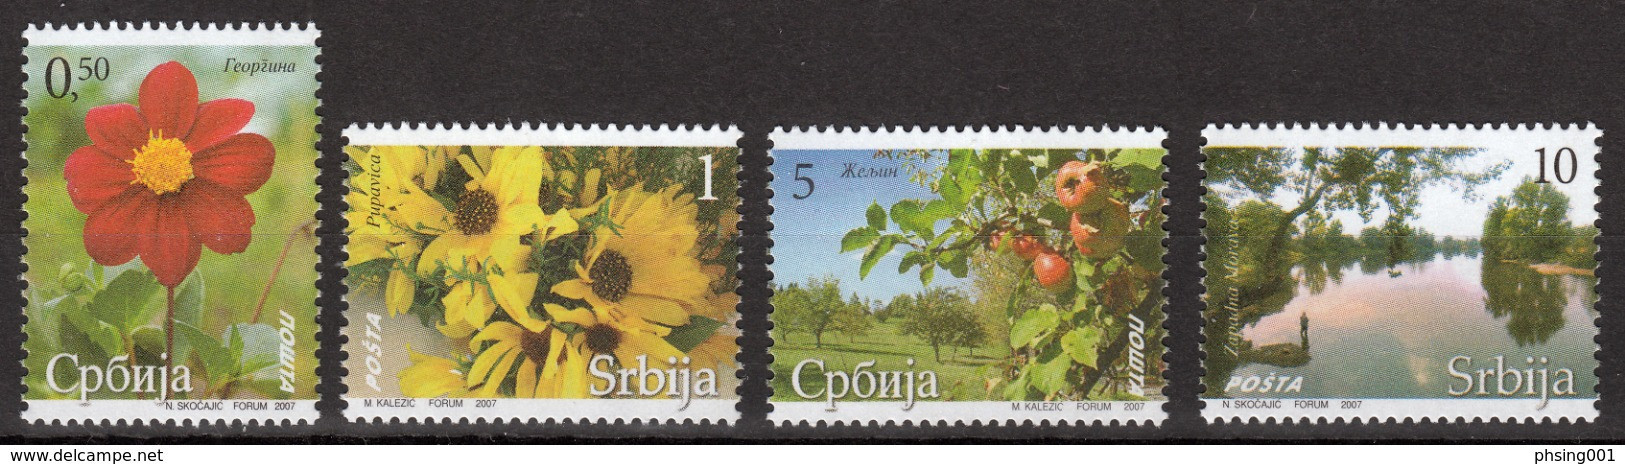 Serbia 2007 Flora Flowers Plants Nature, Definitive Set MNH - Serbien